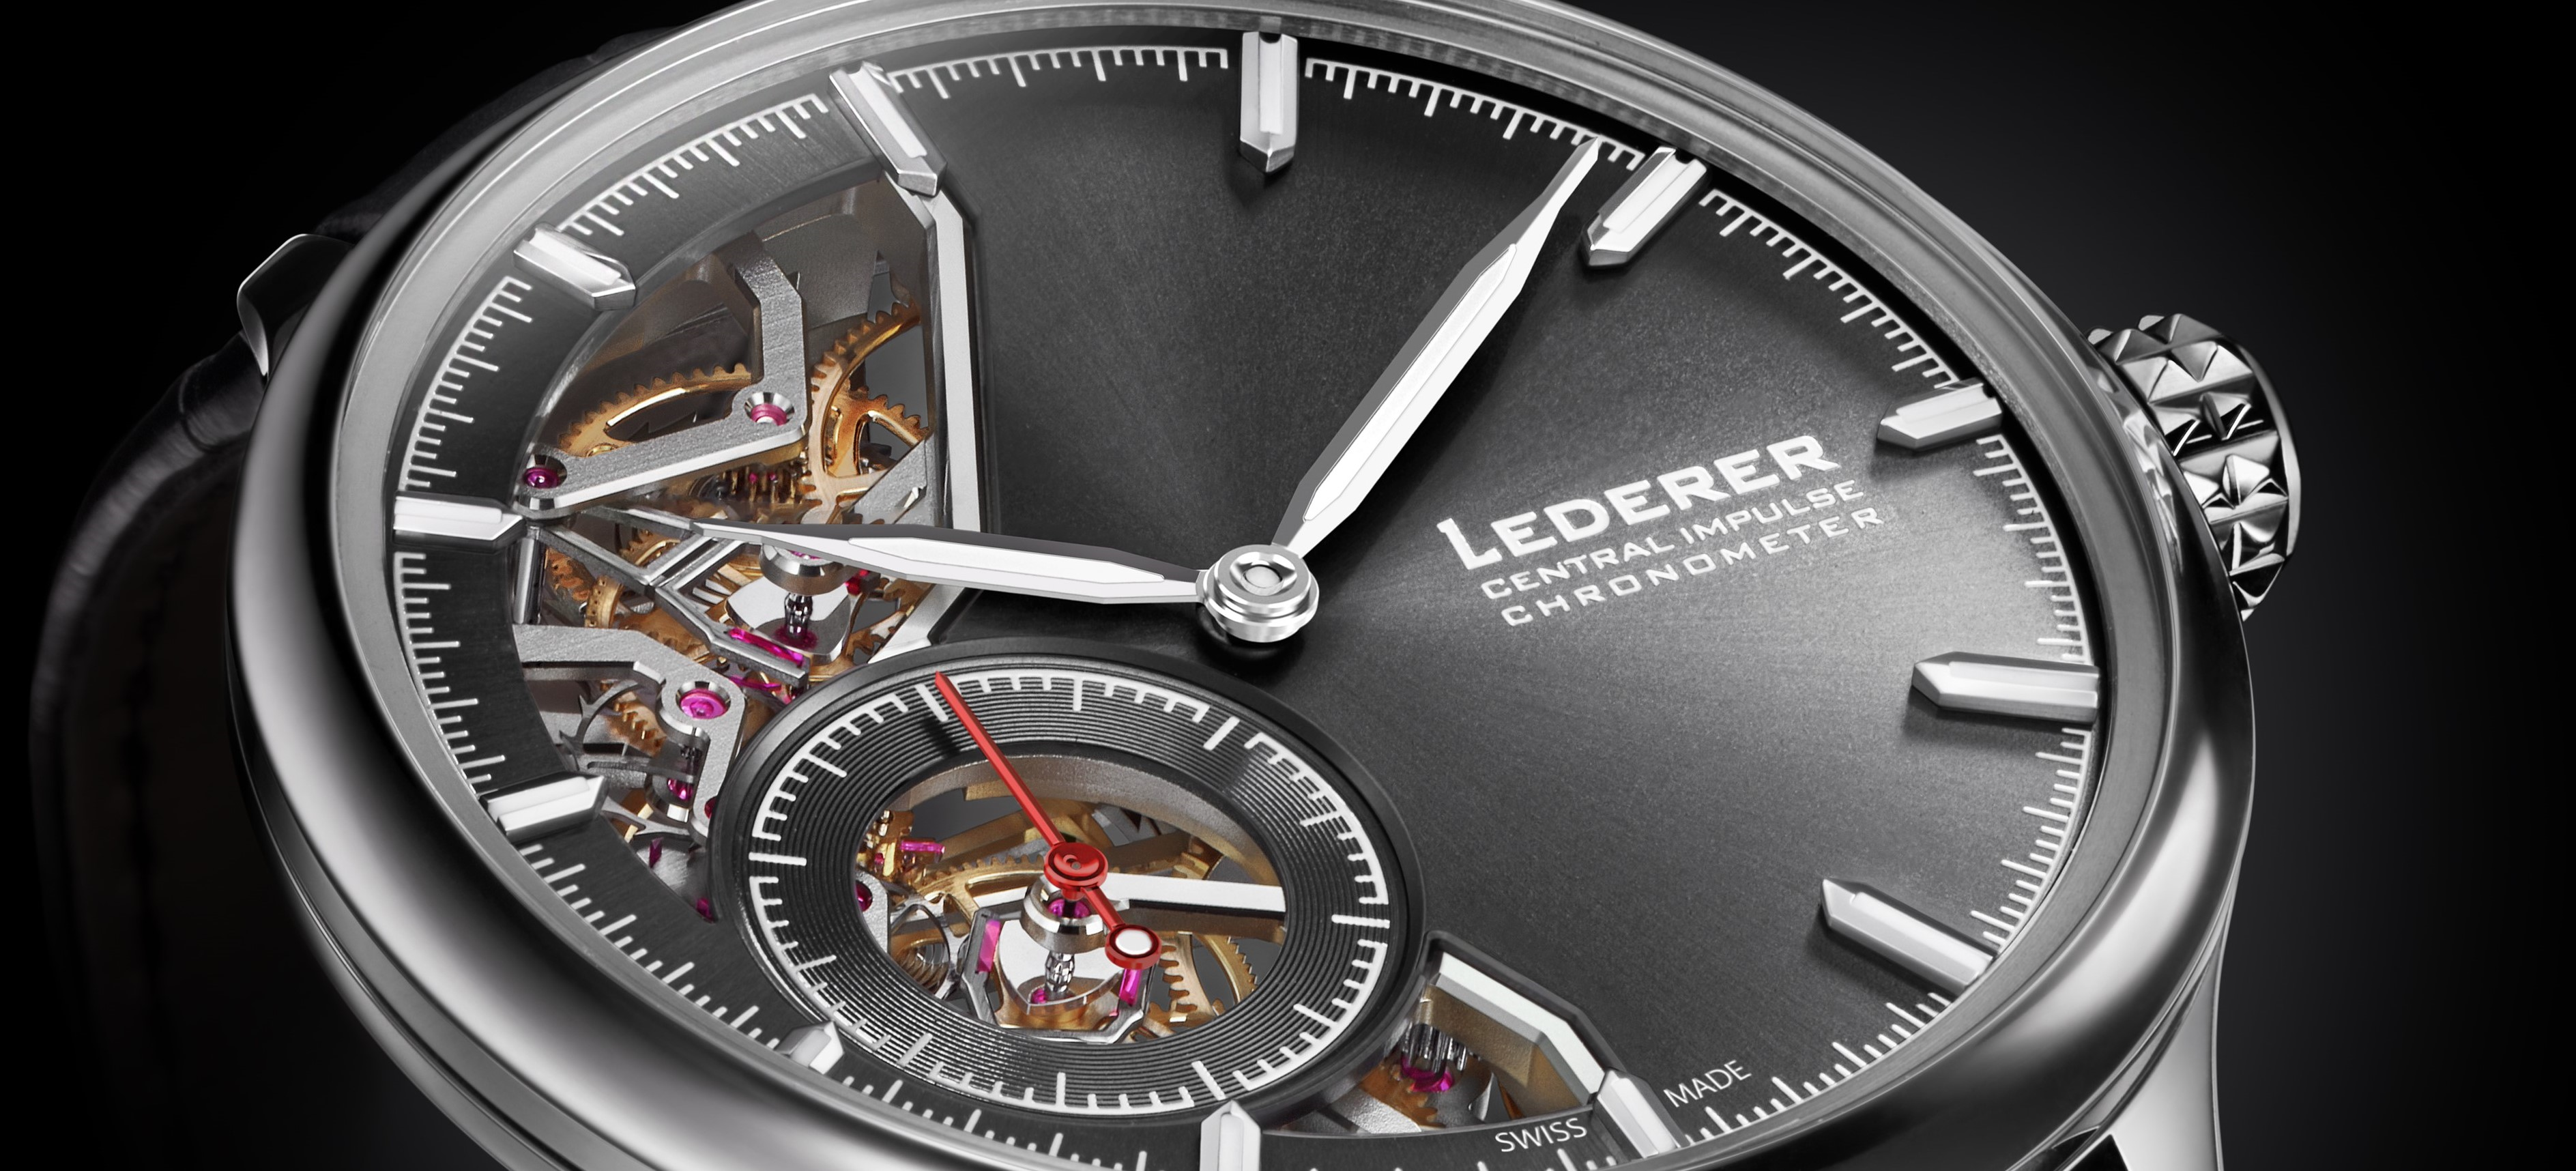 At the Heart of the Bernhard Lederer Central Impulse Chronometer -  Revolution Watch